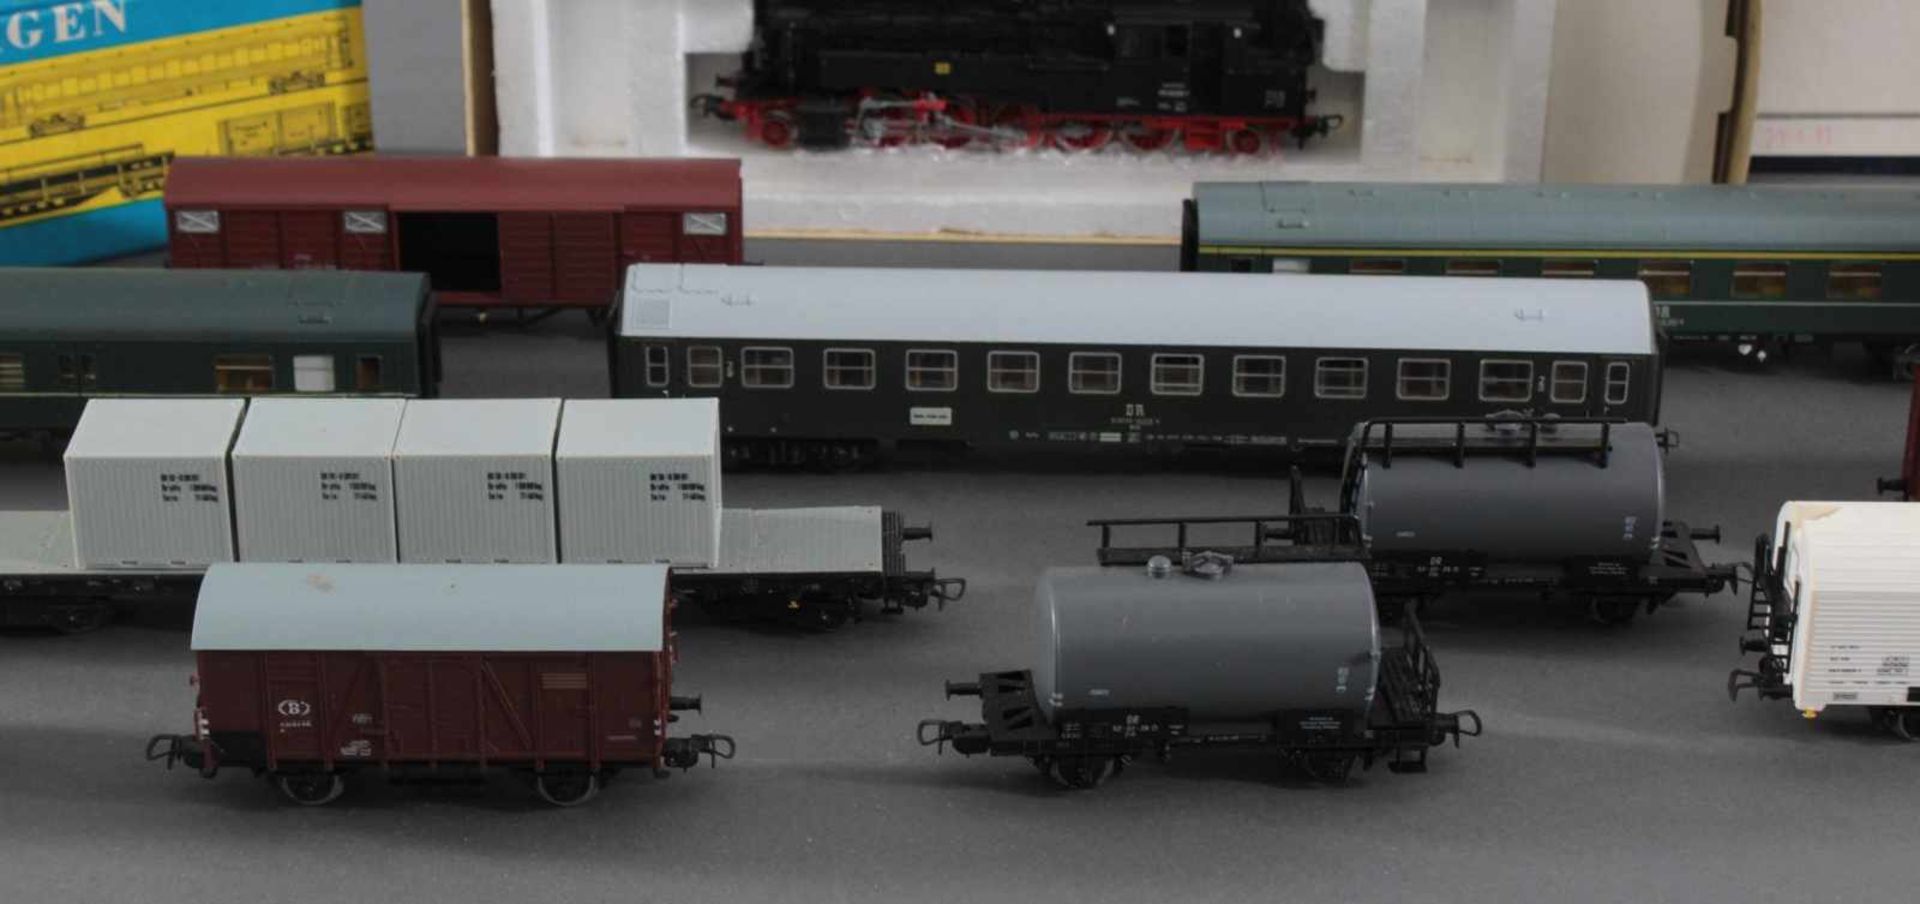 2 Piko Lokomotiven mit 13 Piko Waggons Spur H0Piko BR 95 und BR BR 38 Dampf-Loks in der - Bild 3 aus 5